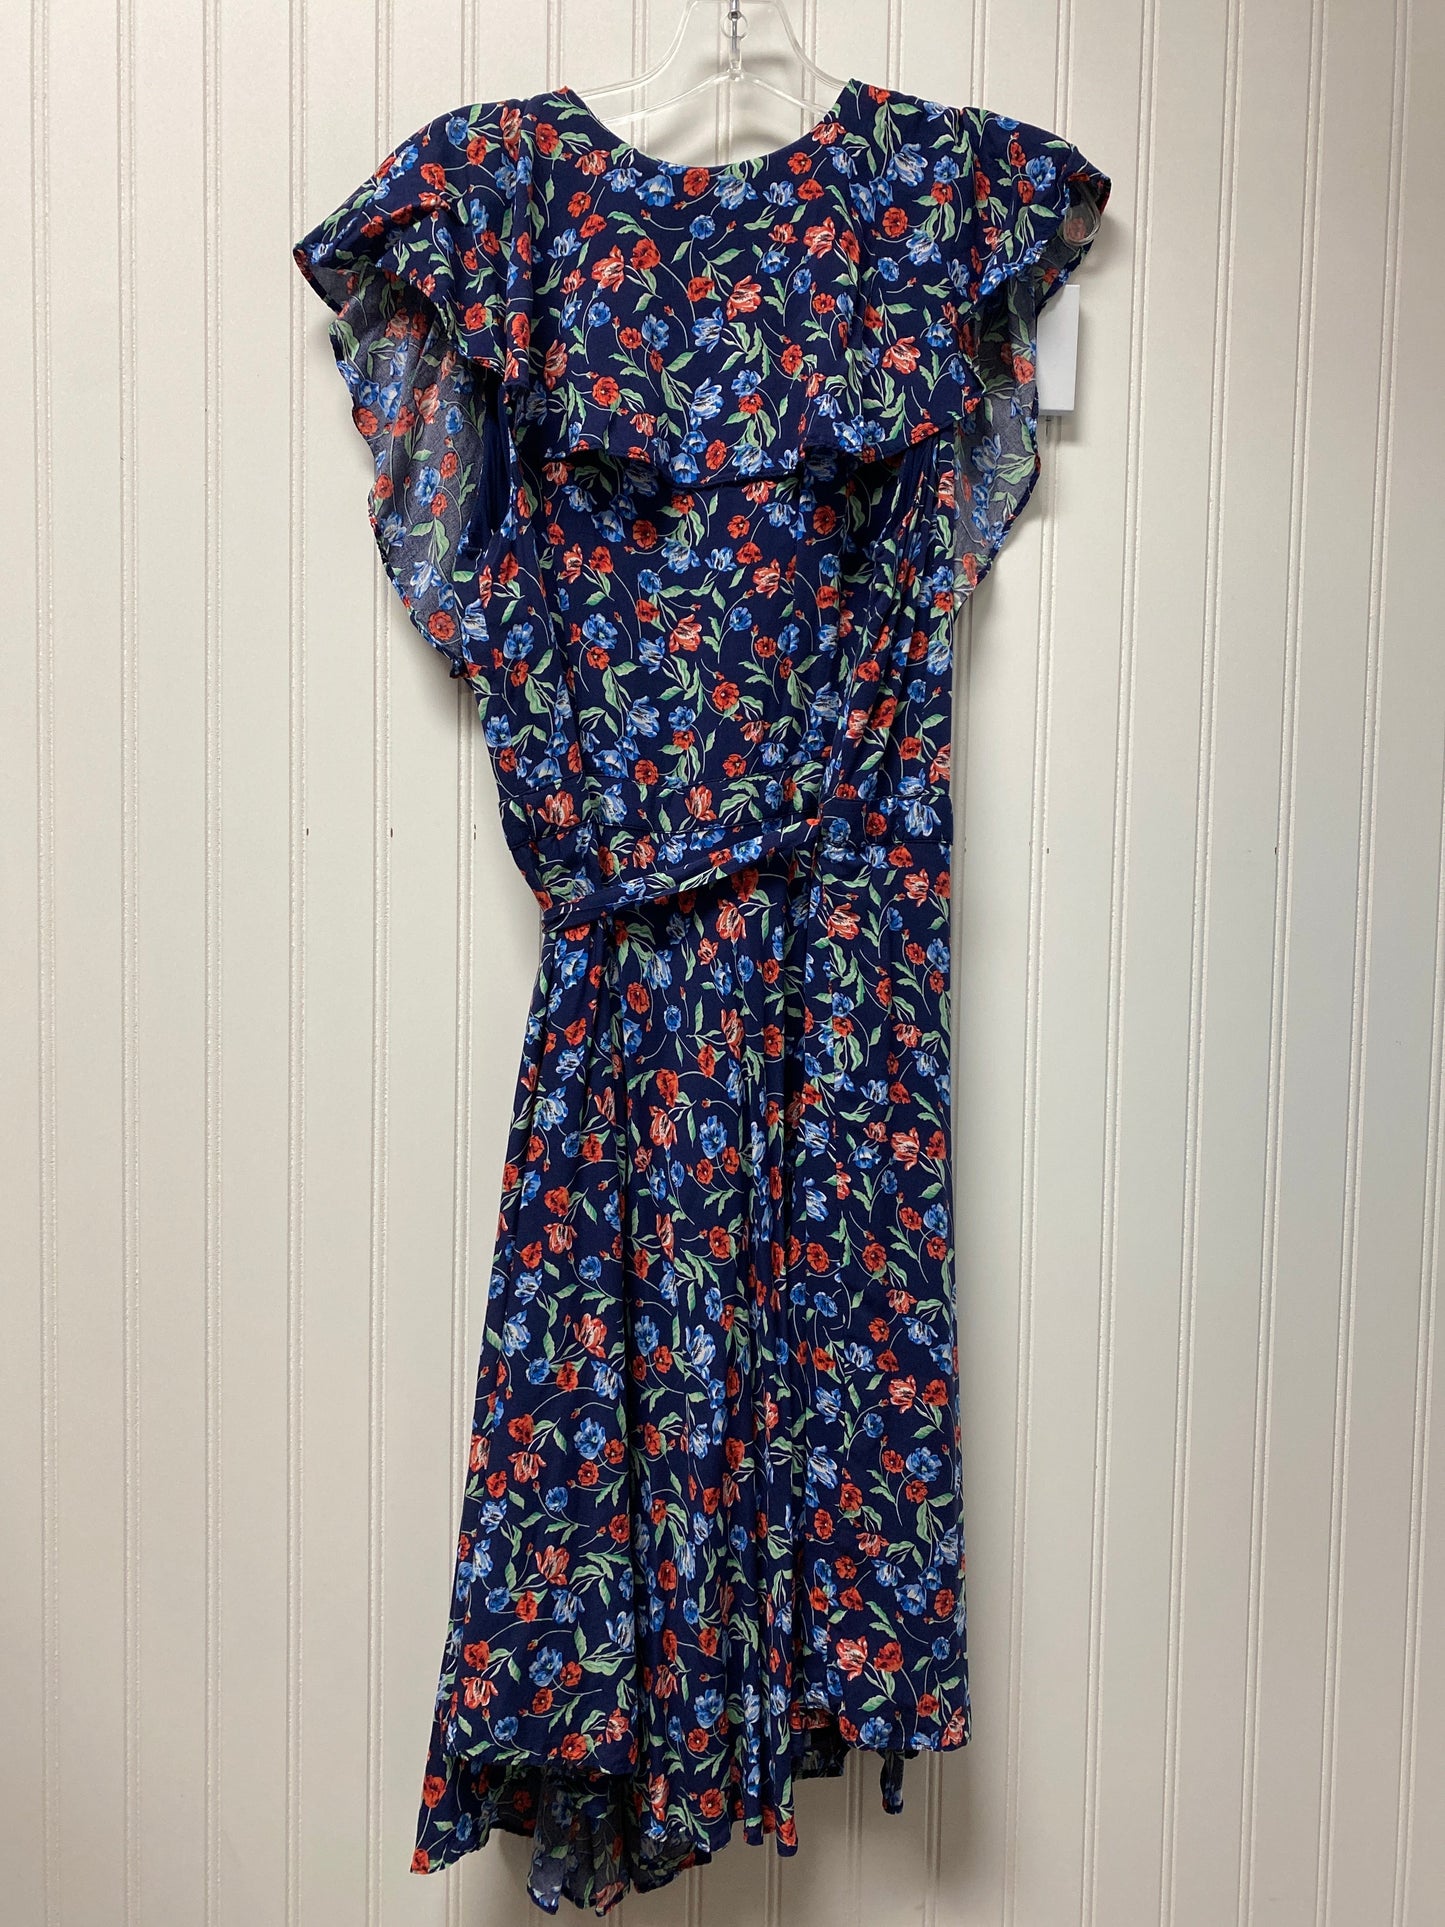 Floral Print Dress Casual Maxi Draper James, Size L